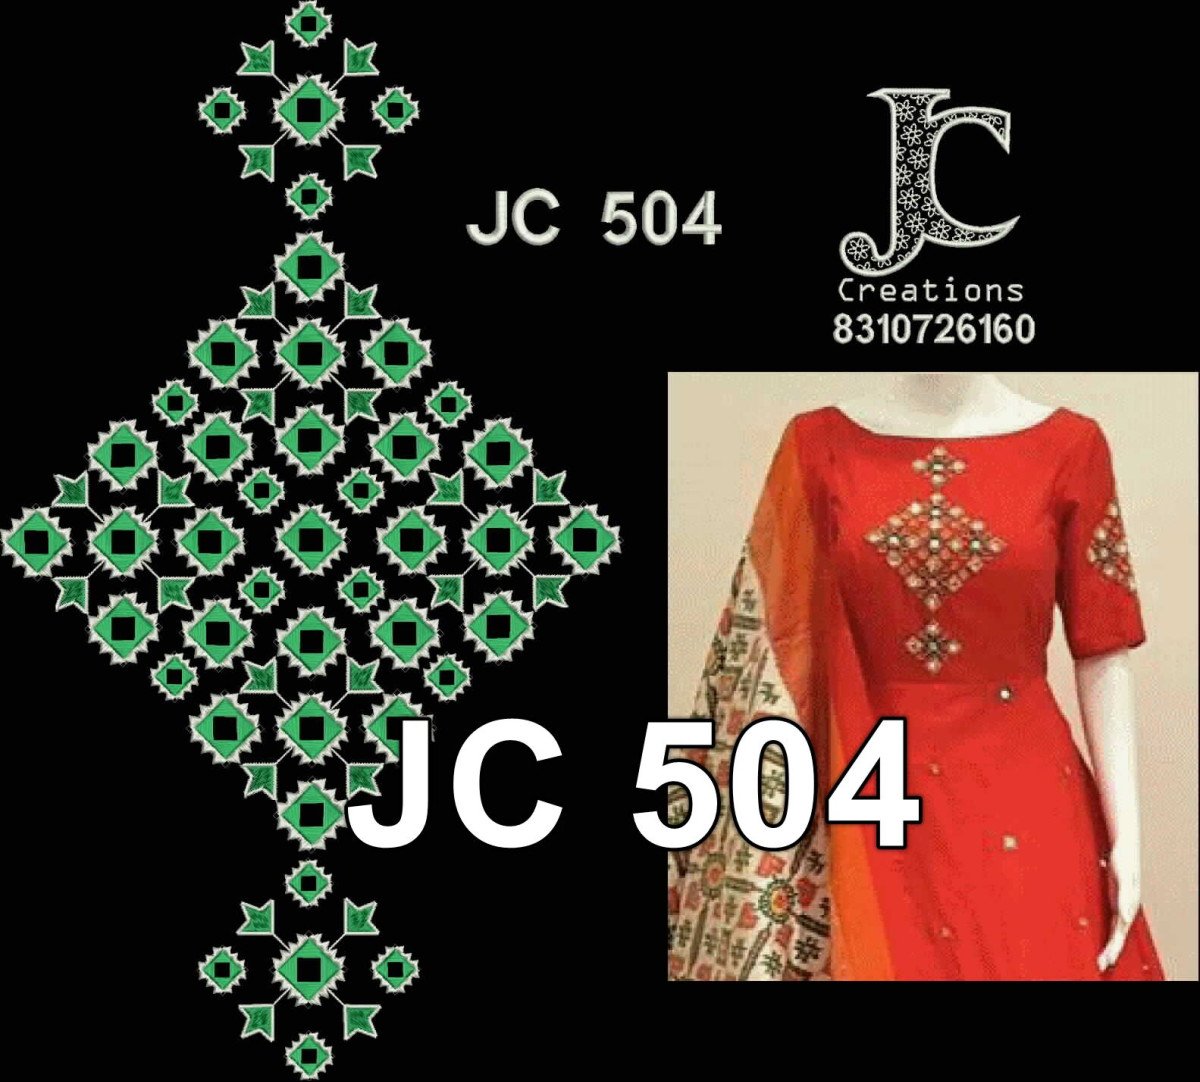 JC504